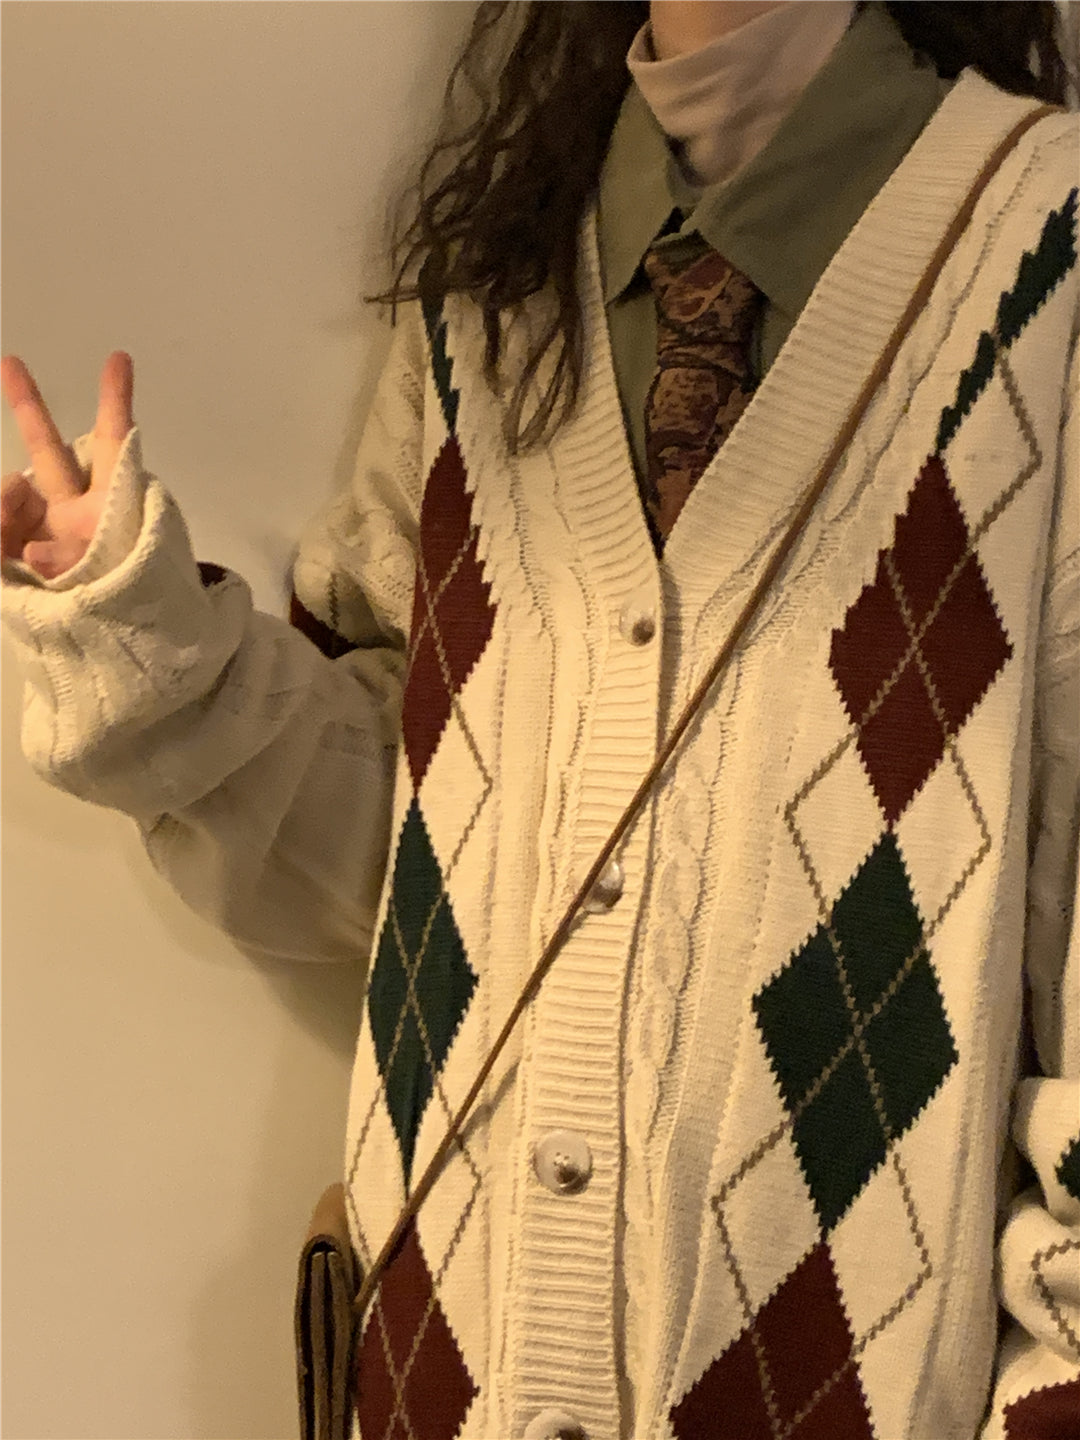 Loose-Fitting Plaid Cardigan Sweater Jacket Vintage Style